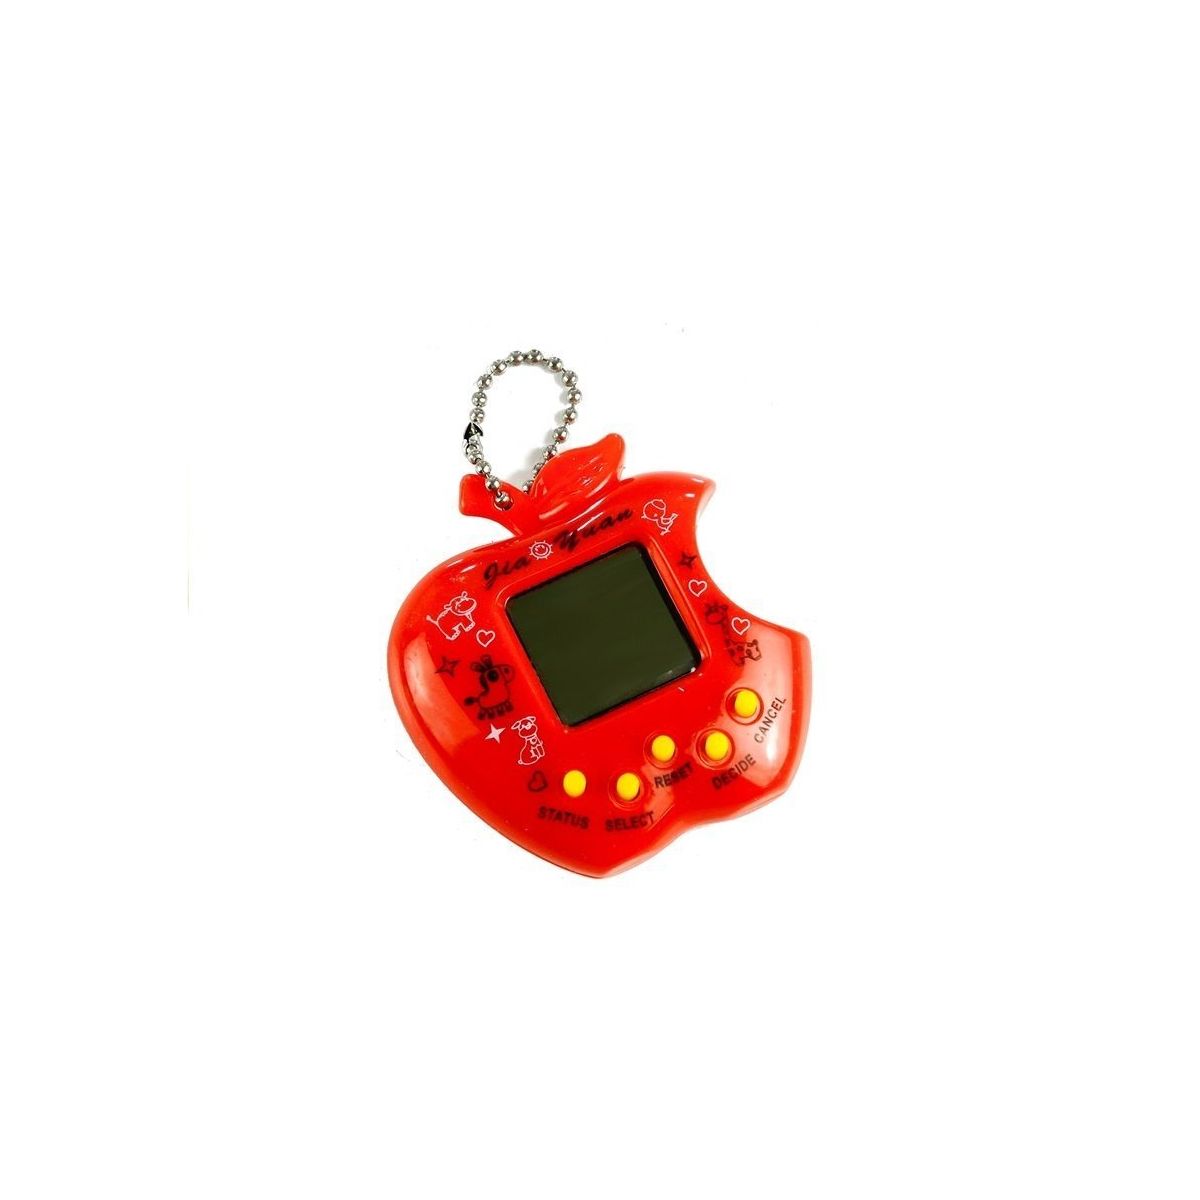 Gra elektroniczna Lean Tamagotchi czerwone (3306)